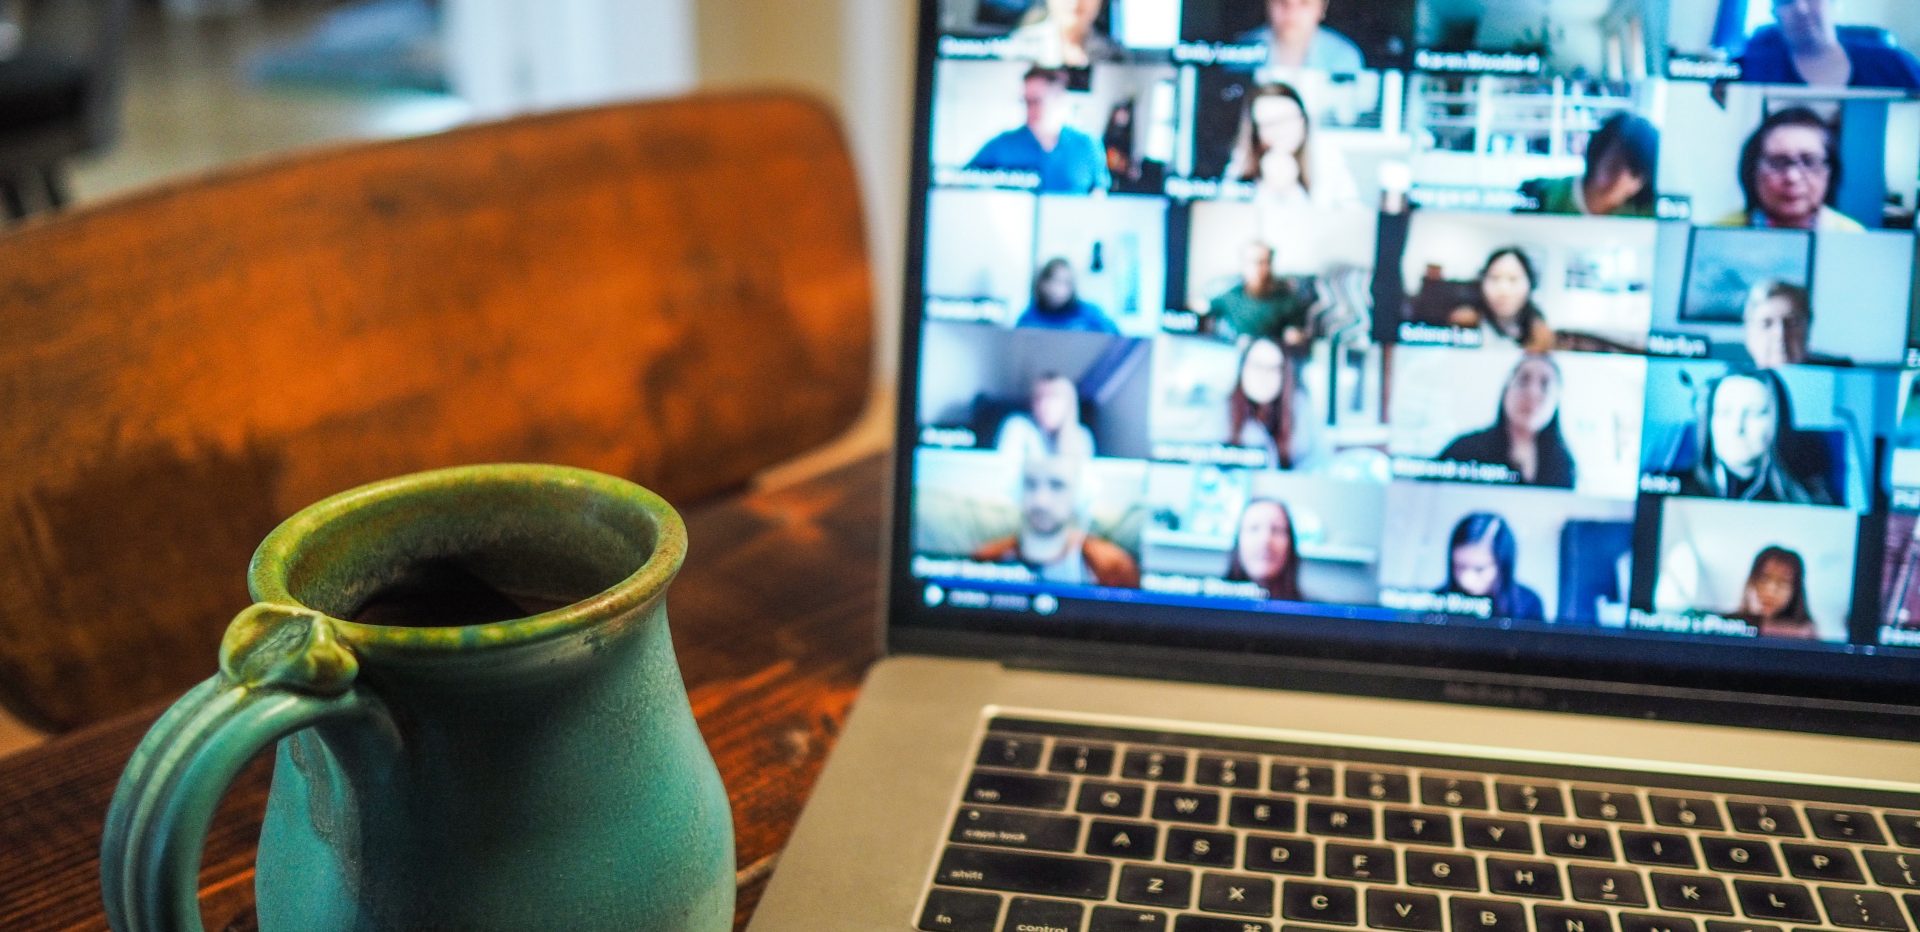 En kaffekop er stillet ved siden af en computer med en videomøde på skærmen. 